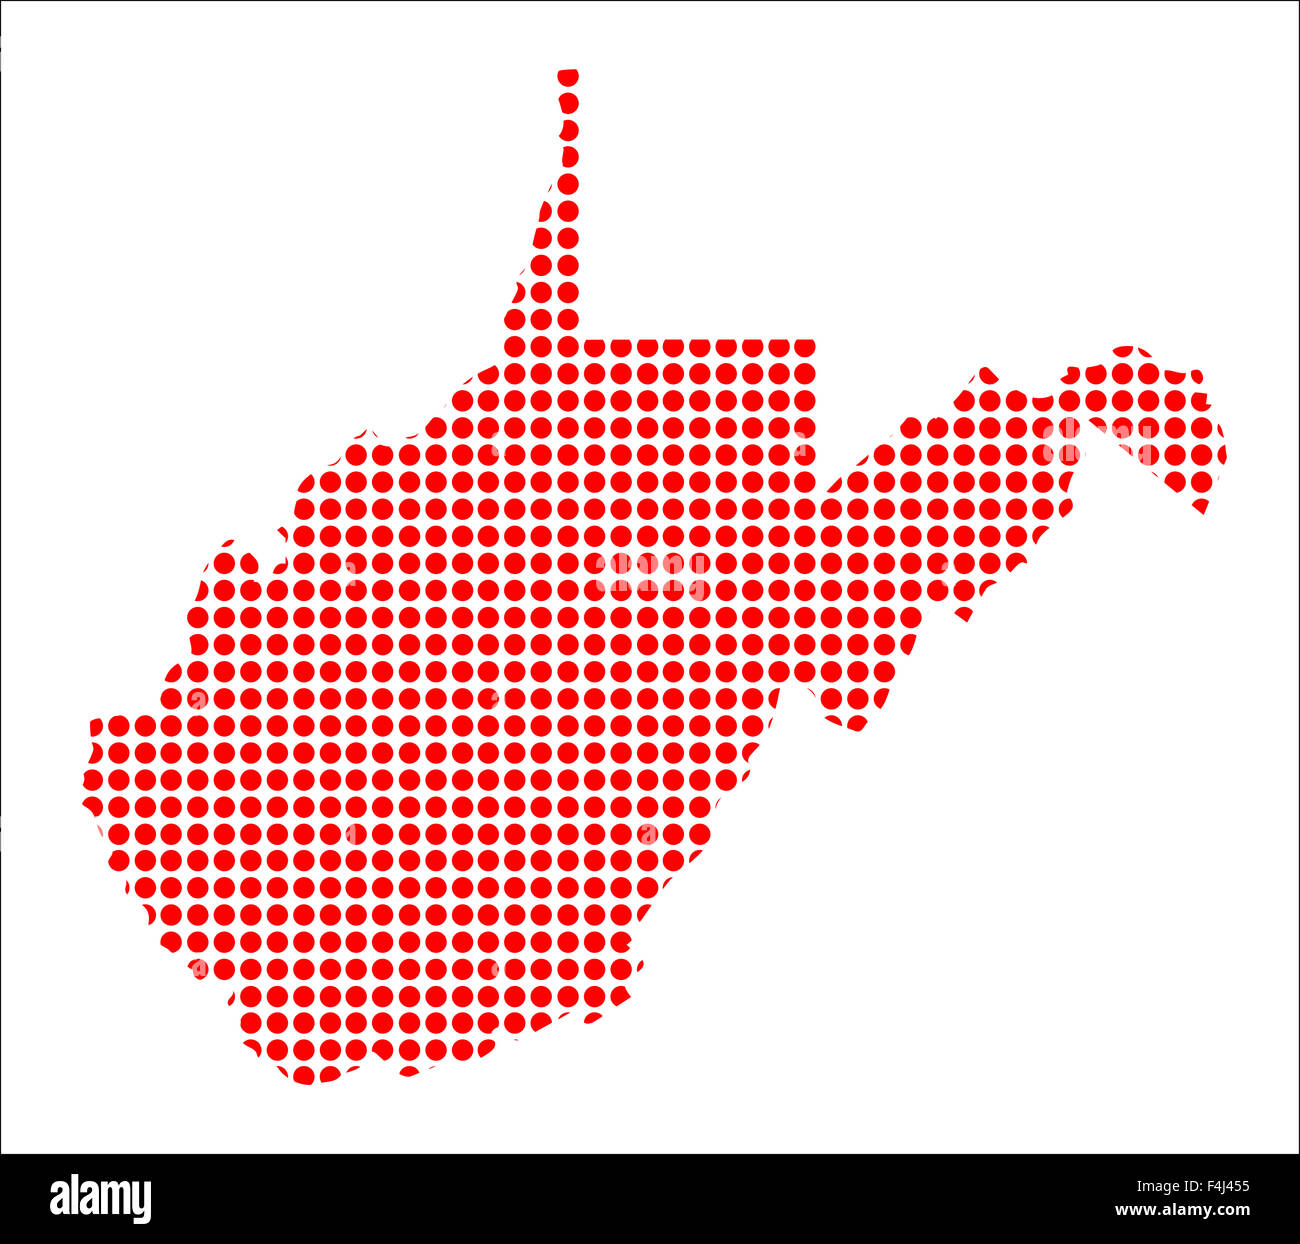 Una mappa dello stato del West Virginia creato a partire da una serie di punti rossi su sfondo bianco Foto Stock